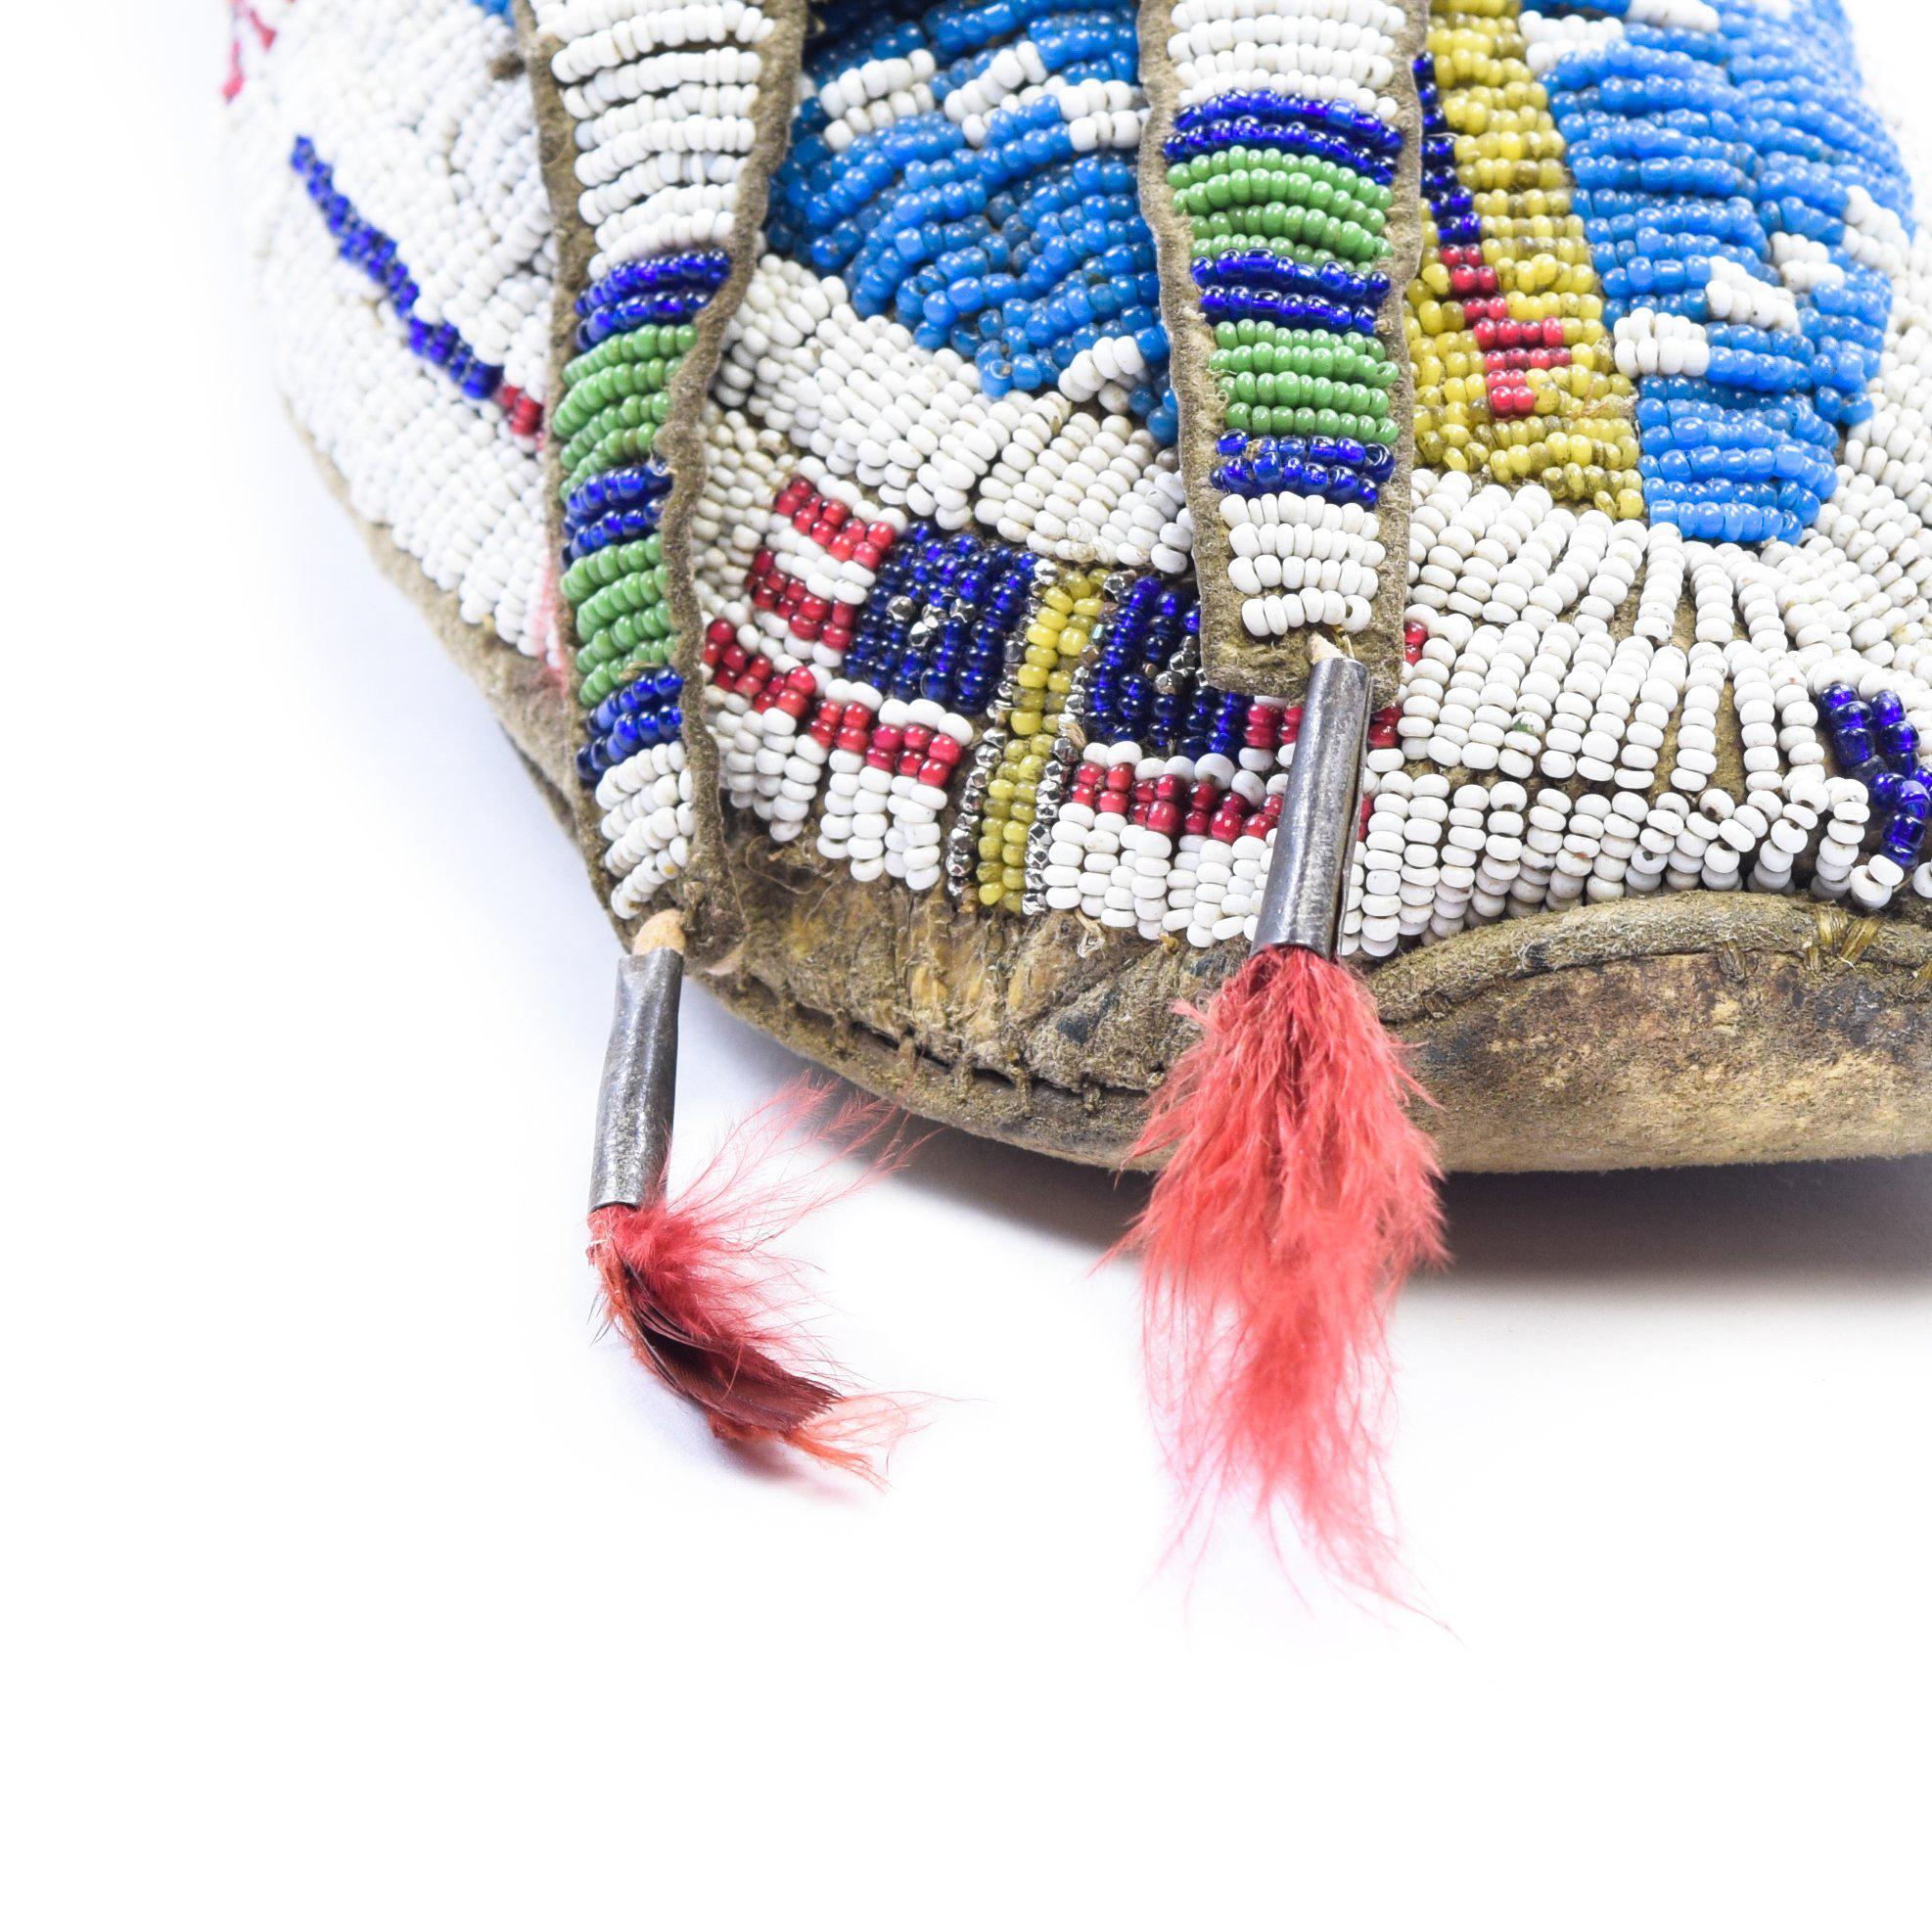 Superbes mocassins sioux, perlés, principalement en bleu et blanc, avec motif de drapeau et touffes de poils de cheval sur les languettes.

Période : vers 1880

Origine : Sioux, Plaines

Taille : 10 3/4